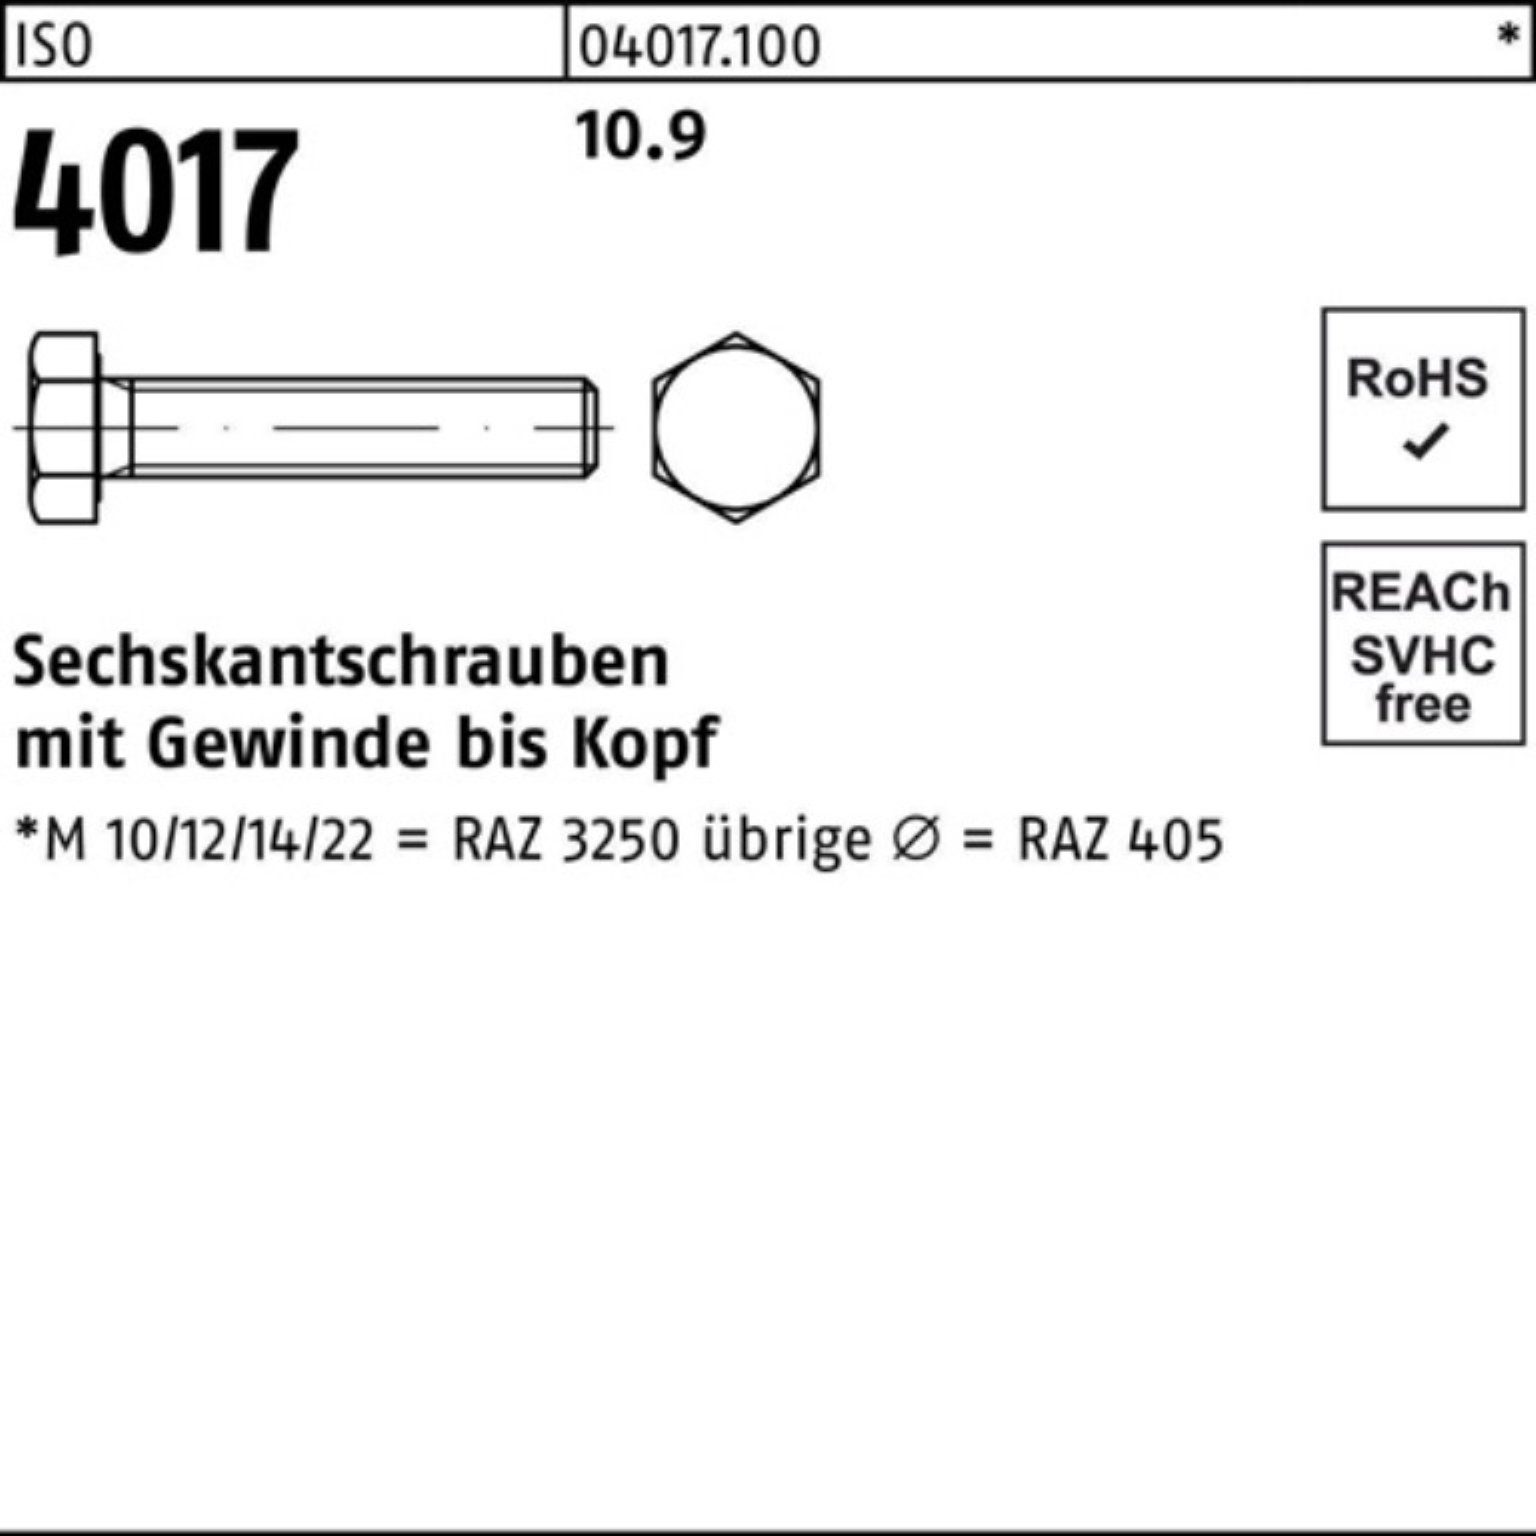 Sechskantschraube 100er ISO 4017 ISO 180 25 M12x VG Bufab Stück 4 Pack Sechskantschraube 10.9